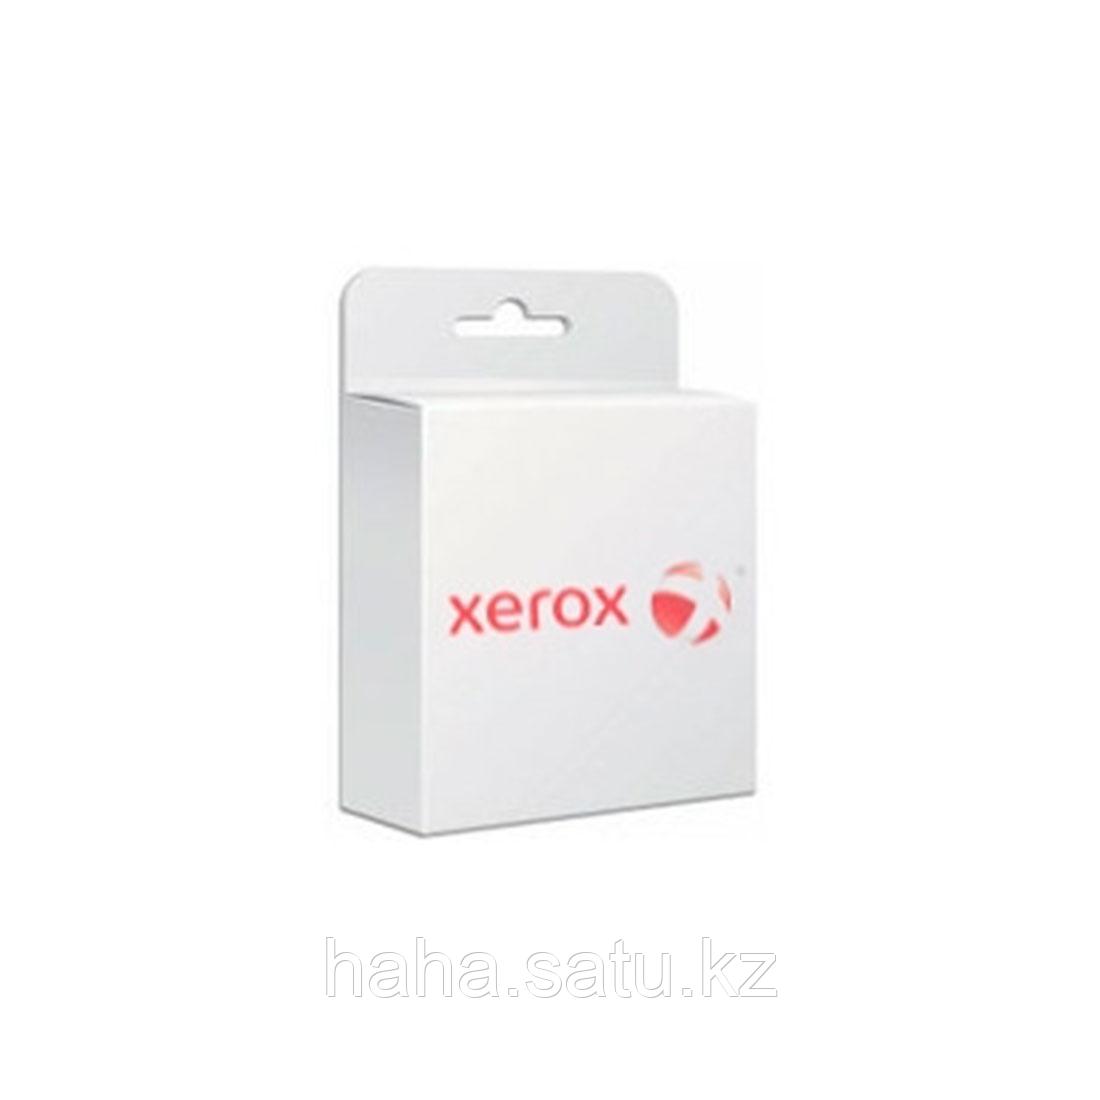 Дополнительный коннектор (2шт) Xerox 320S01073